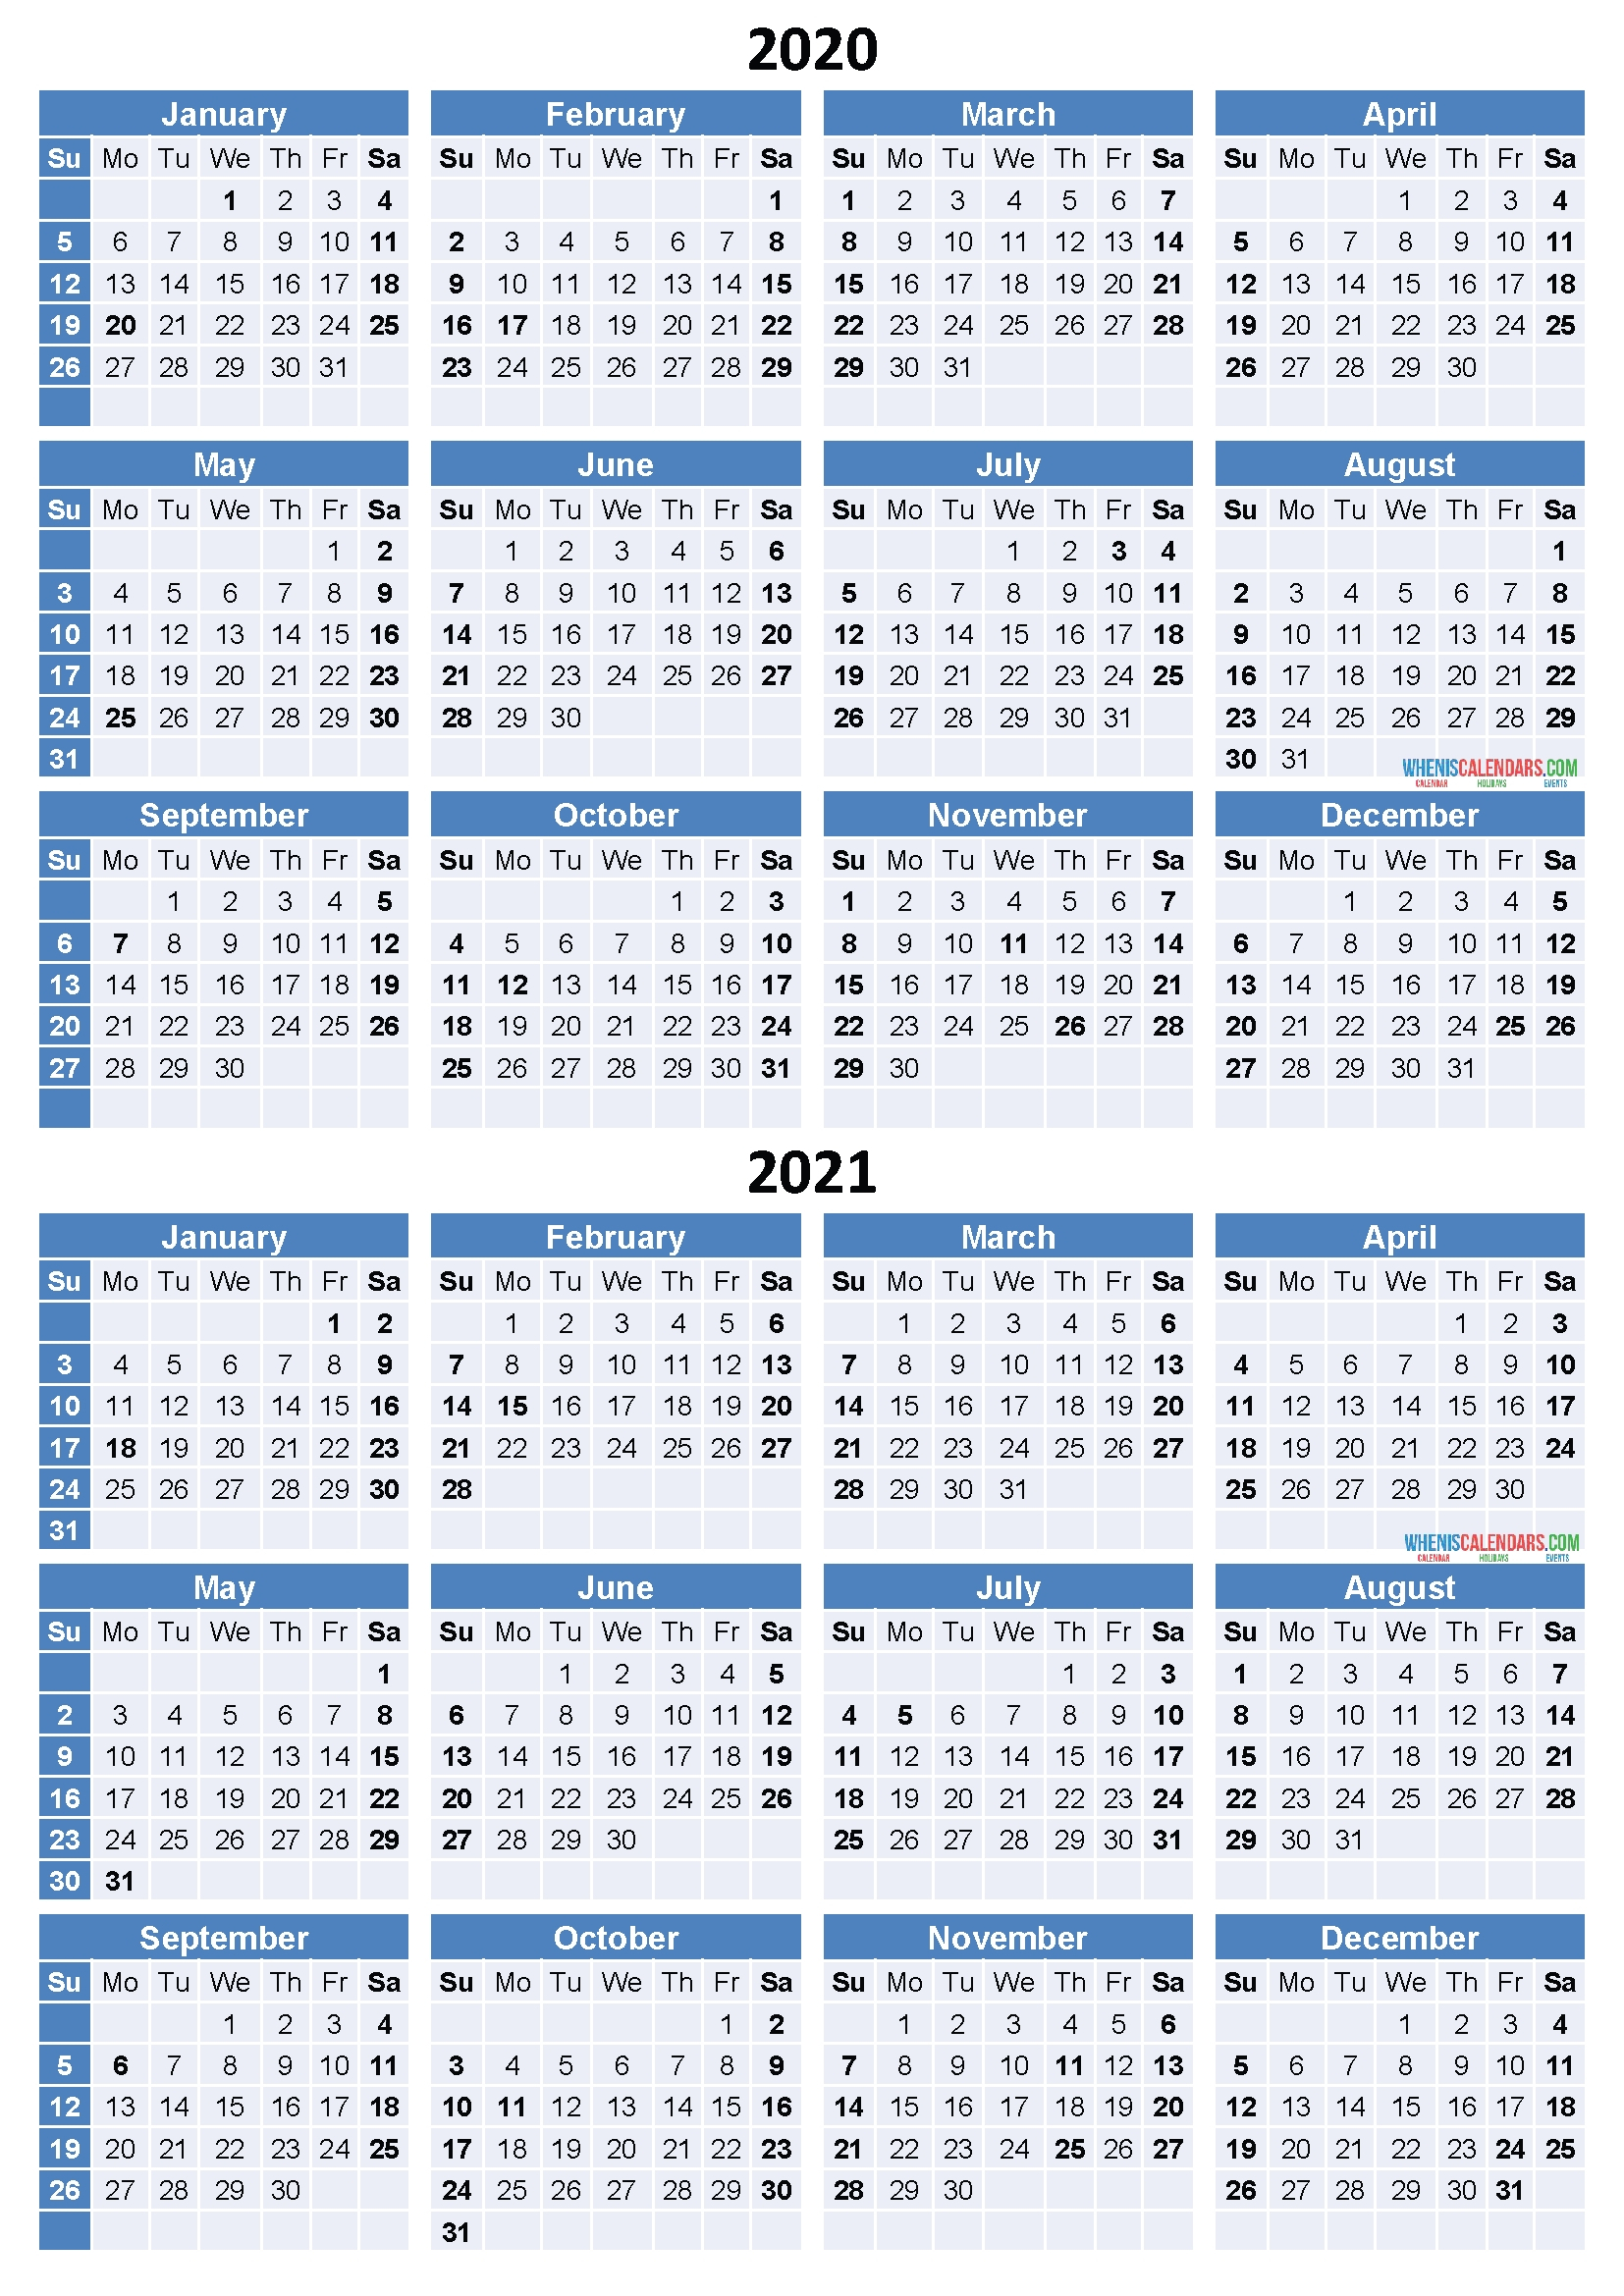 Depo Provera Calendar 2021 Printable | Calendar Printables-Blank 2021 Florida W 9